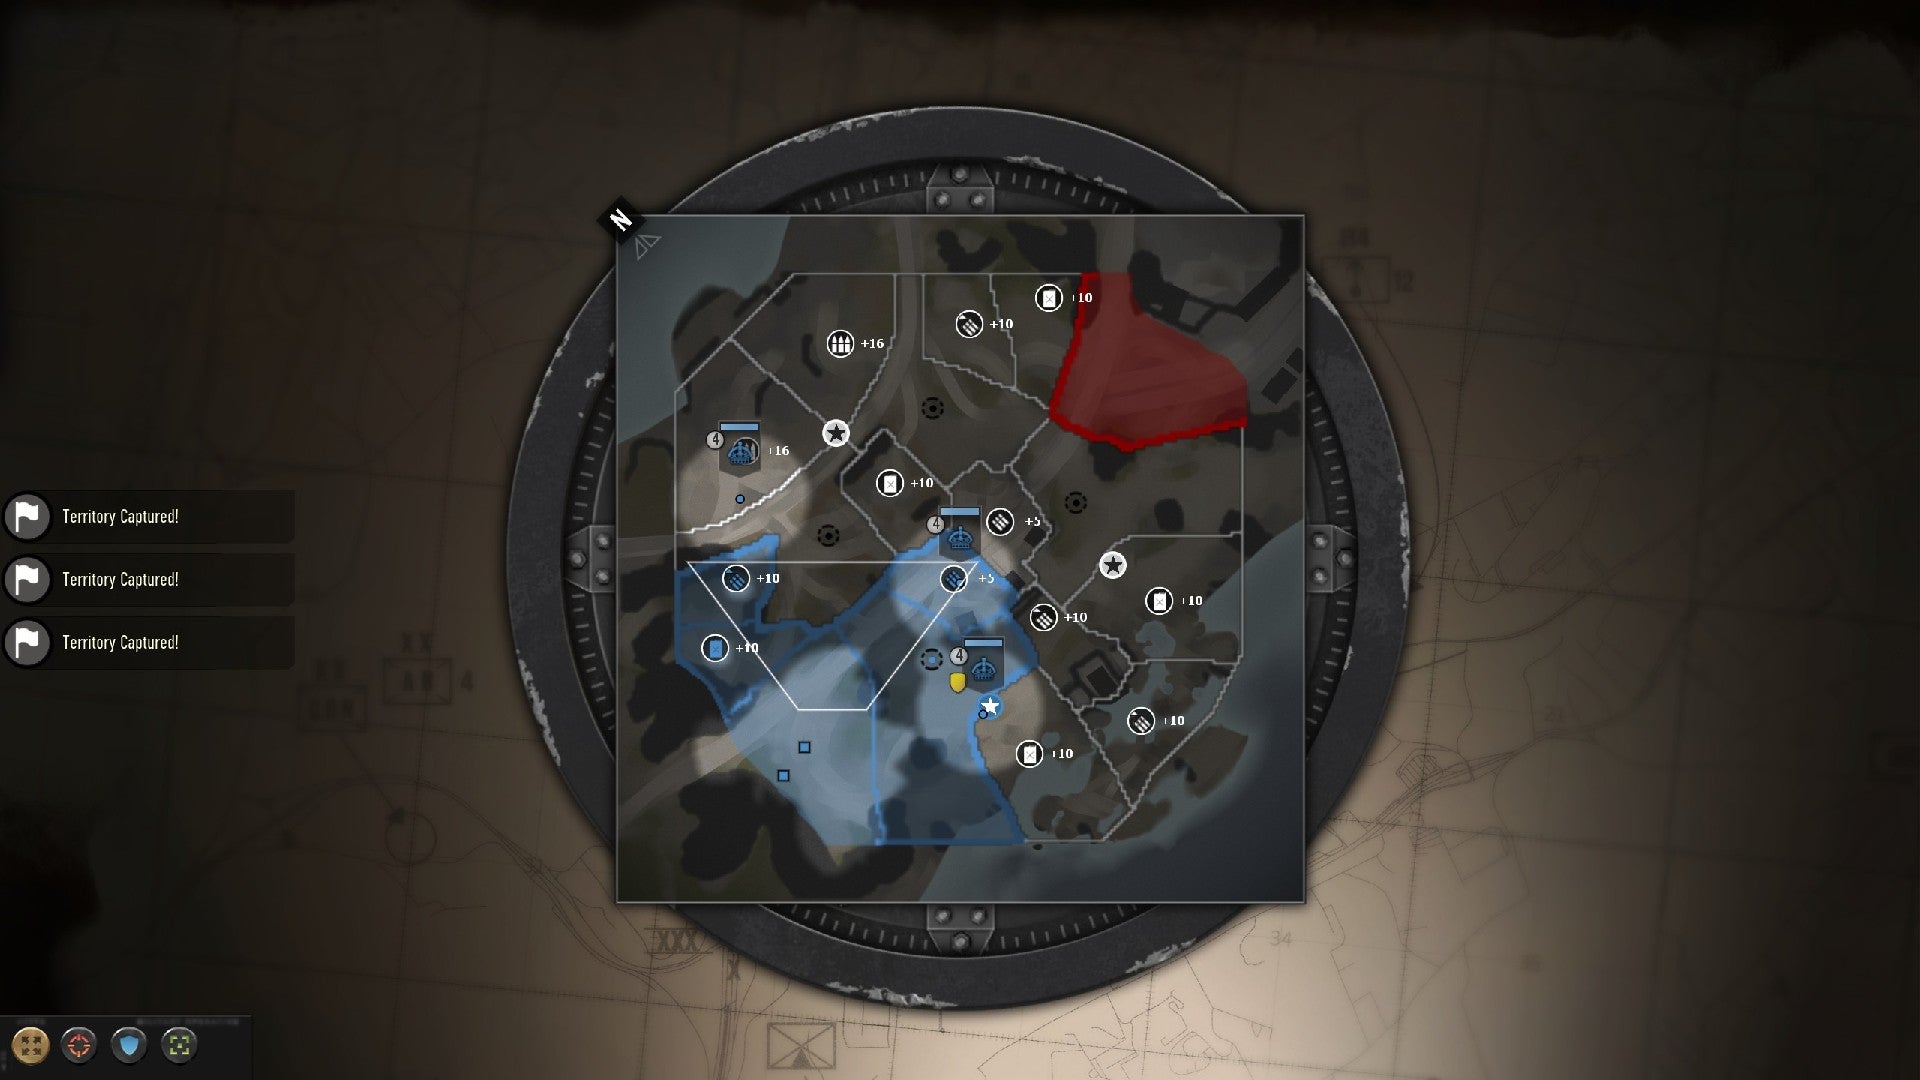 Изображение Company Of Heroes 3, Показывающее Карту С Синими И Красными Плитками, Обозначающими Захваченные Позиции.